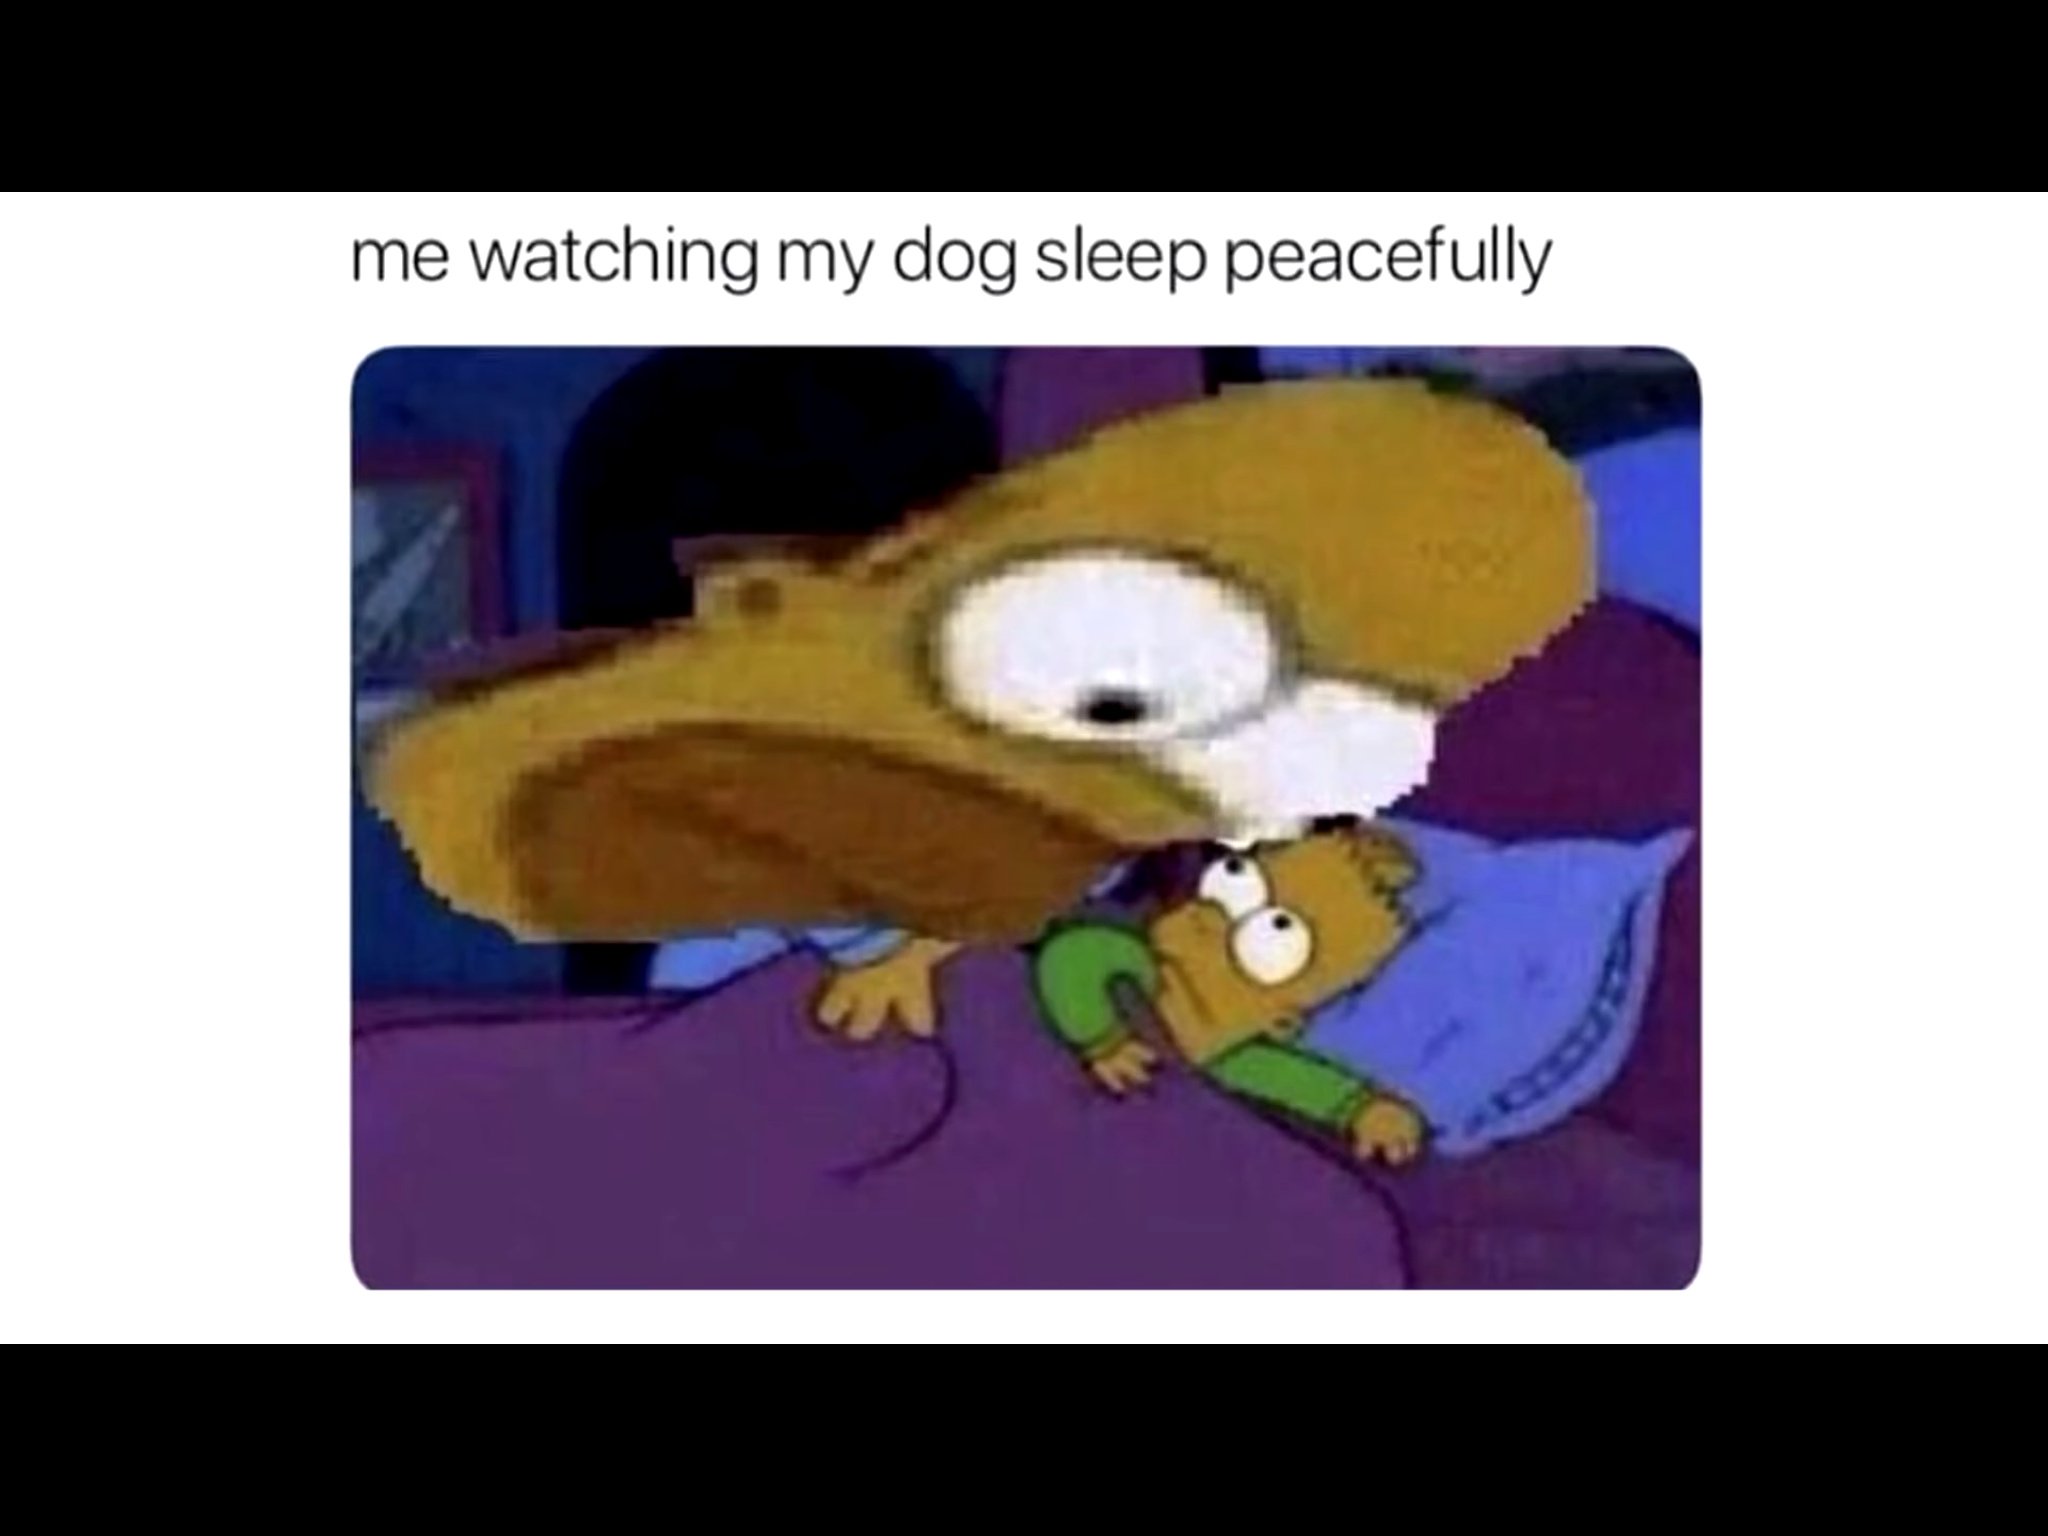 Poor doggo - meme